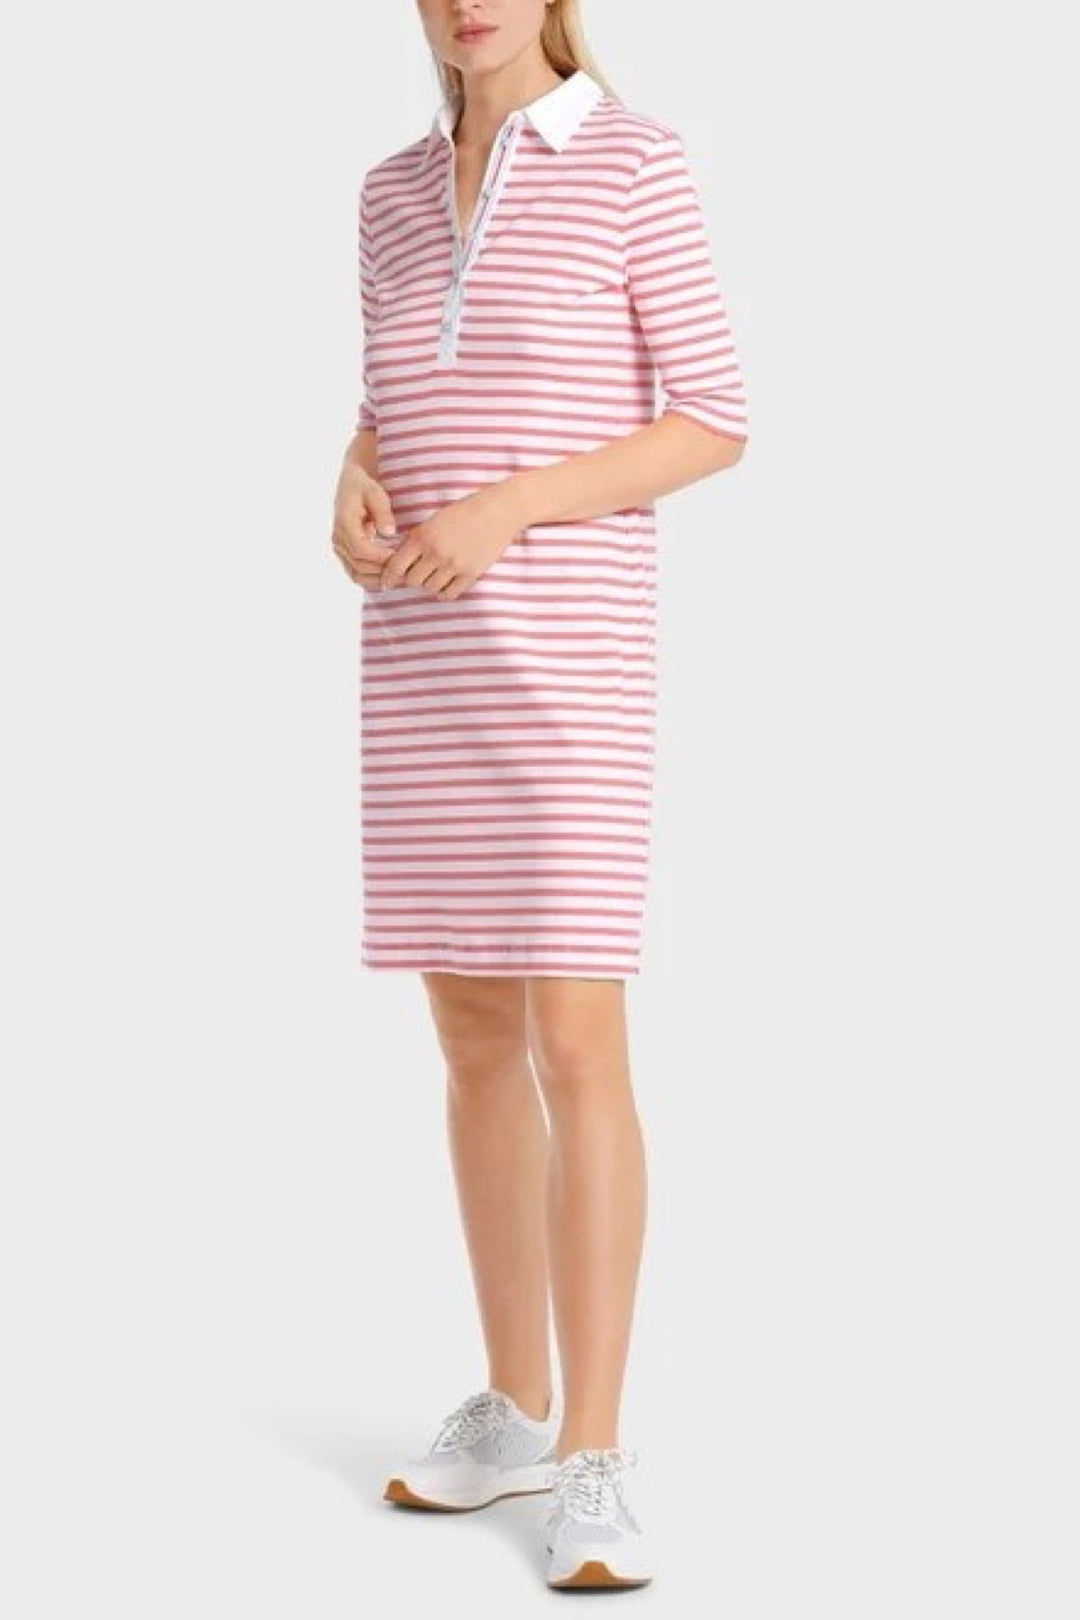 Sporty striped dress